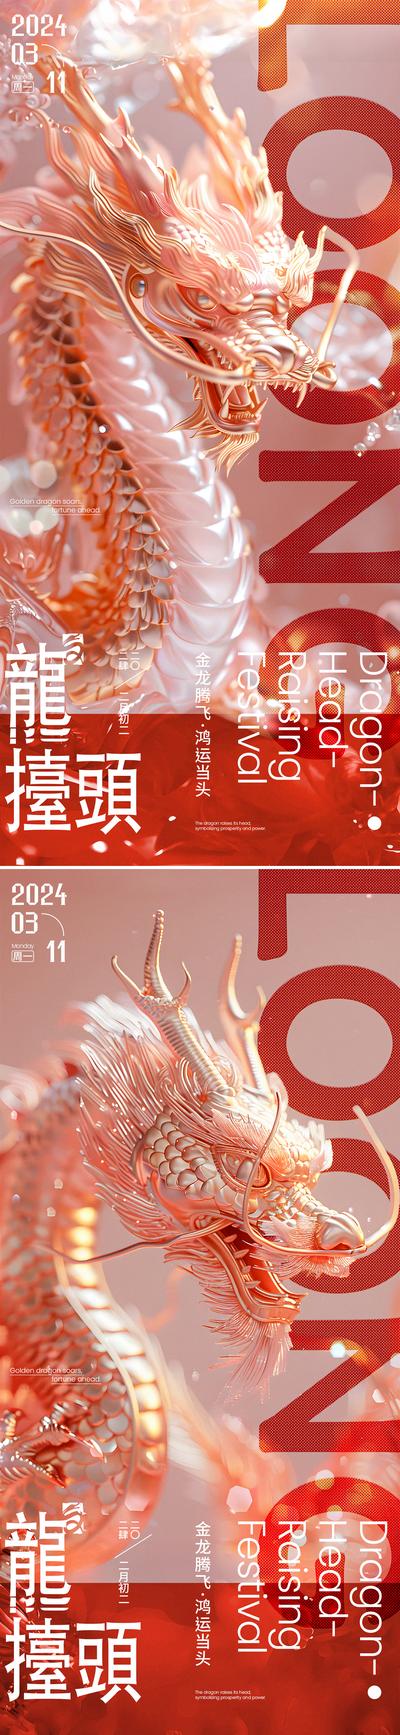 【南门网】广告 海报 节日 龙抬头 质感 系列 中国传统节日 二月初二 龙 金龙 鸿运当头 龙腾 3D C4D 系列